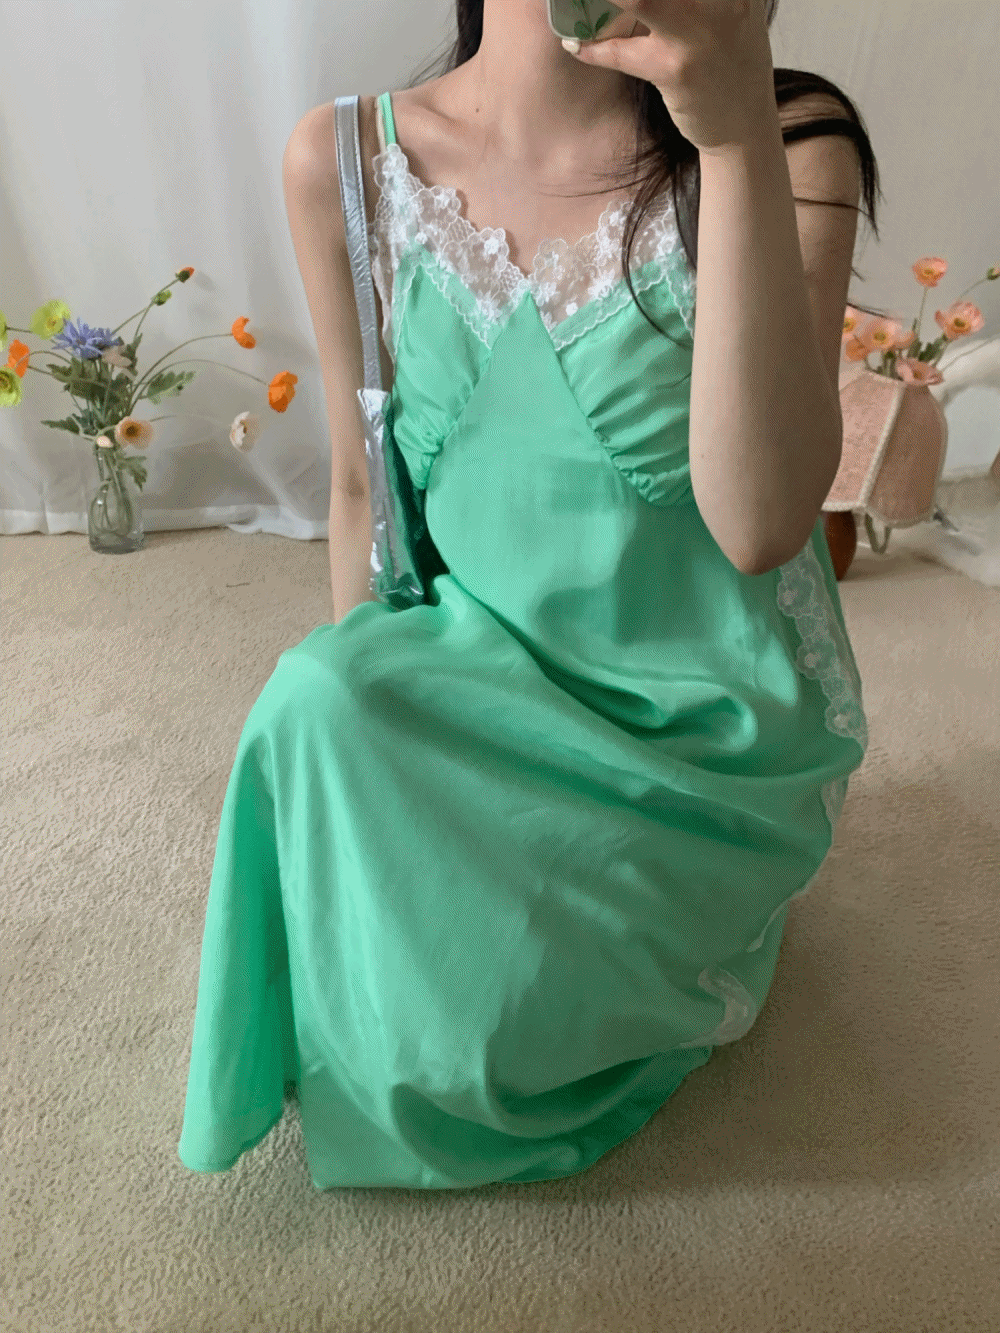 [Dress] Cherry vintage lace slip dress / 2 colors